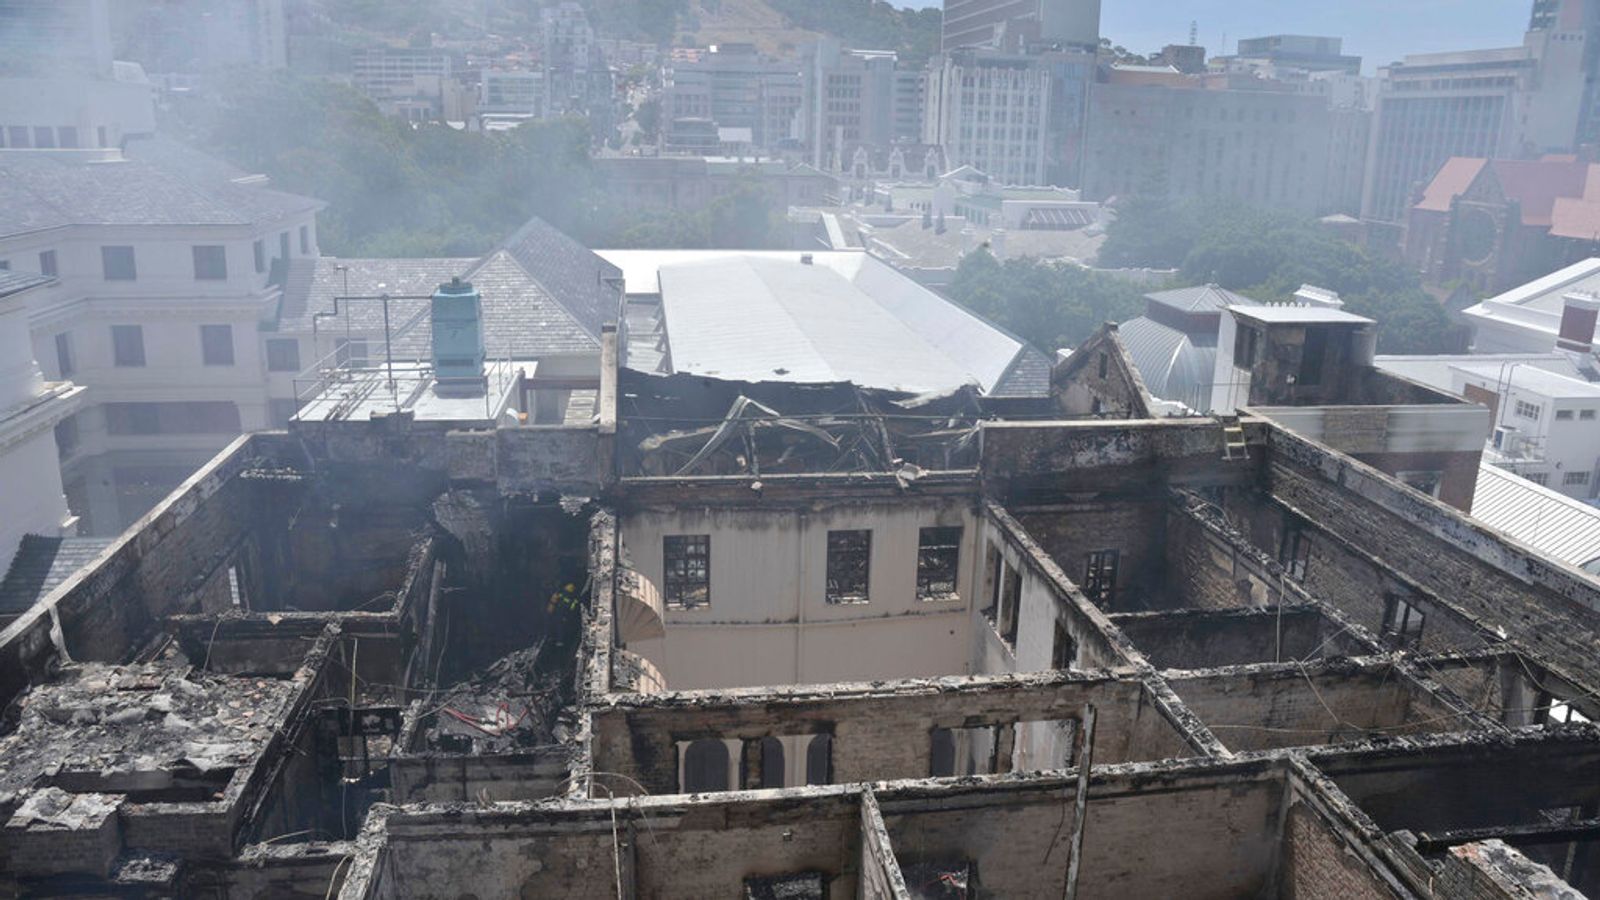 南非议会建筑再发火灾 火焰从屋顶滚滚而下